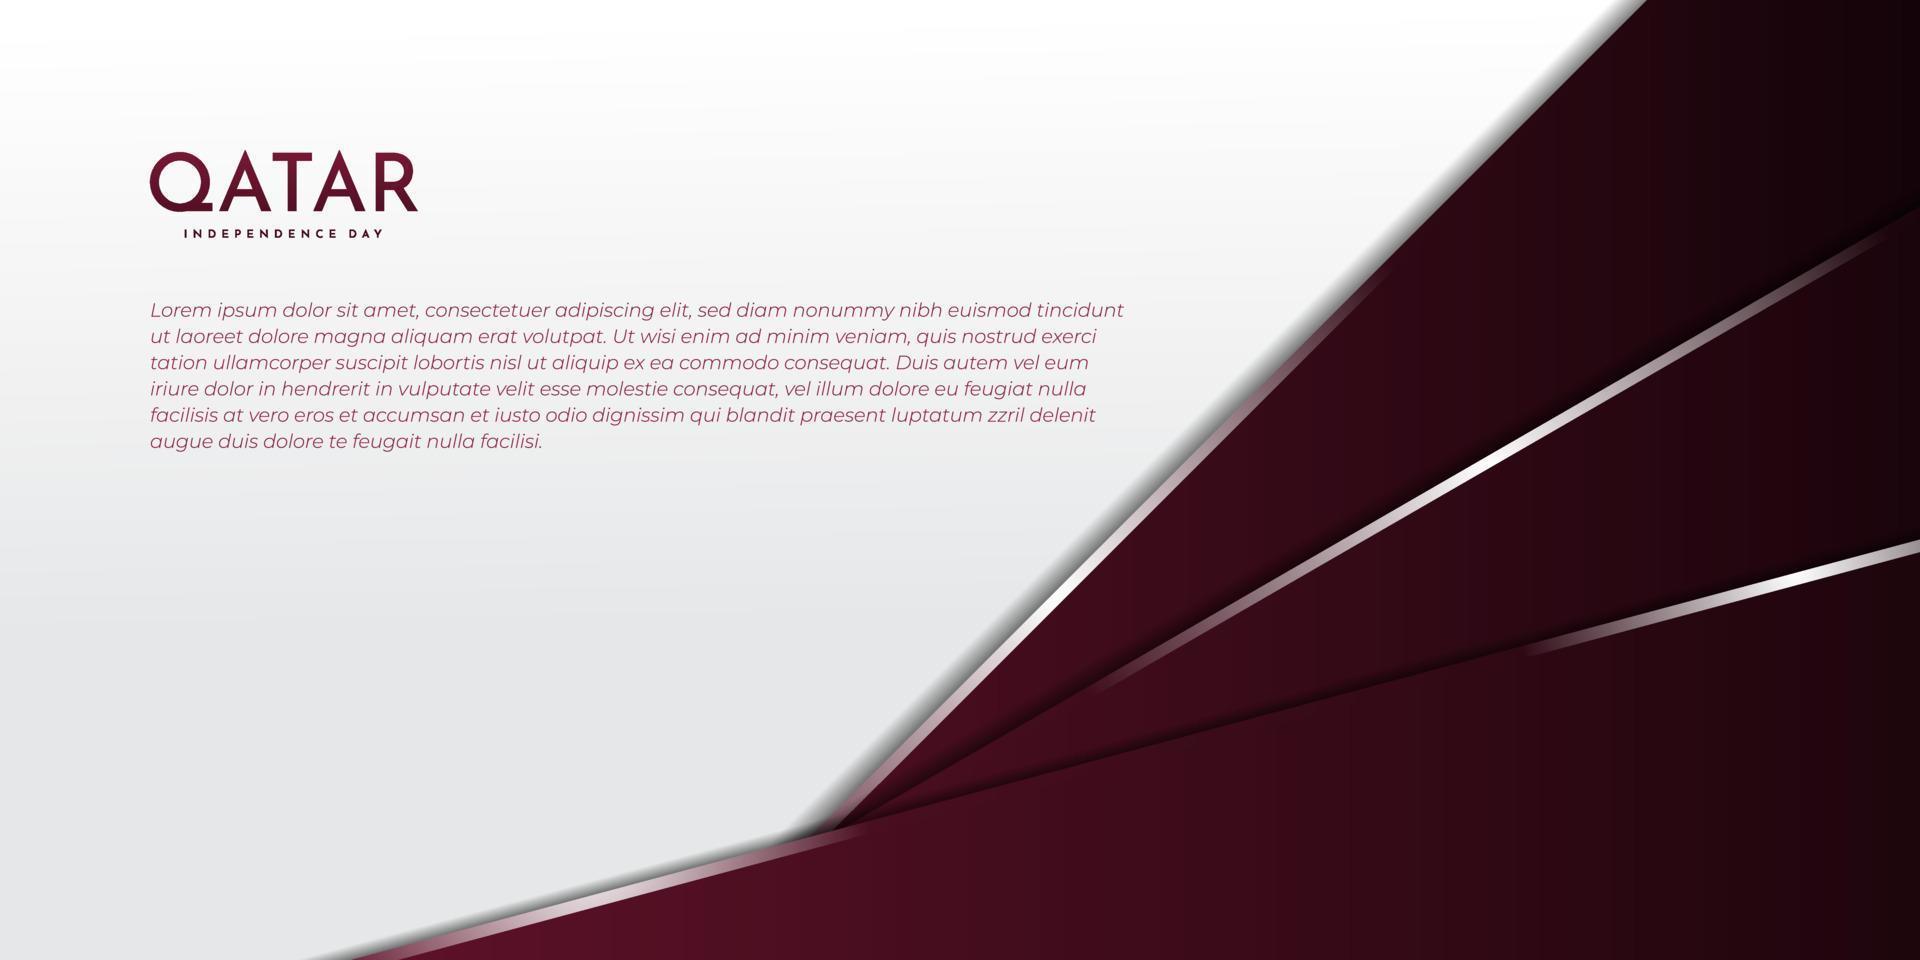 donker kastanjebruin en wit geometrisch ontwerp als achtergrond. qatar onafhankelijkheidsdag sjabloonontwerp. vector